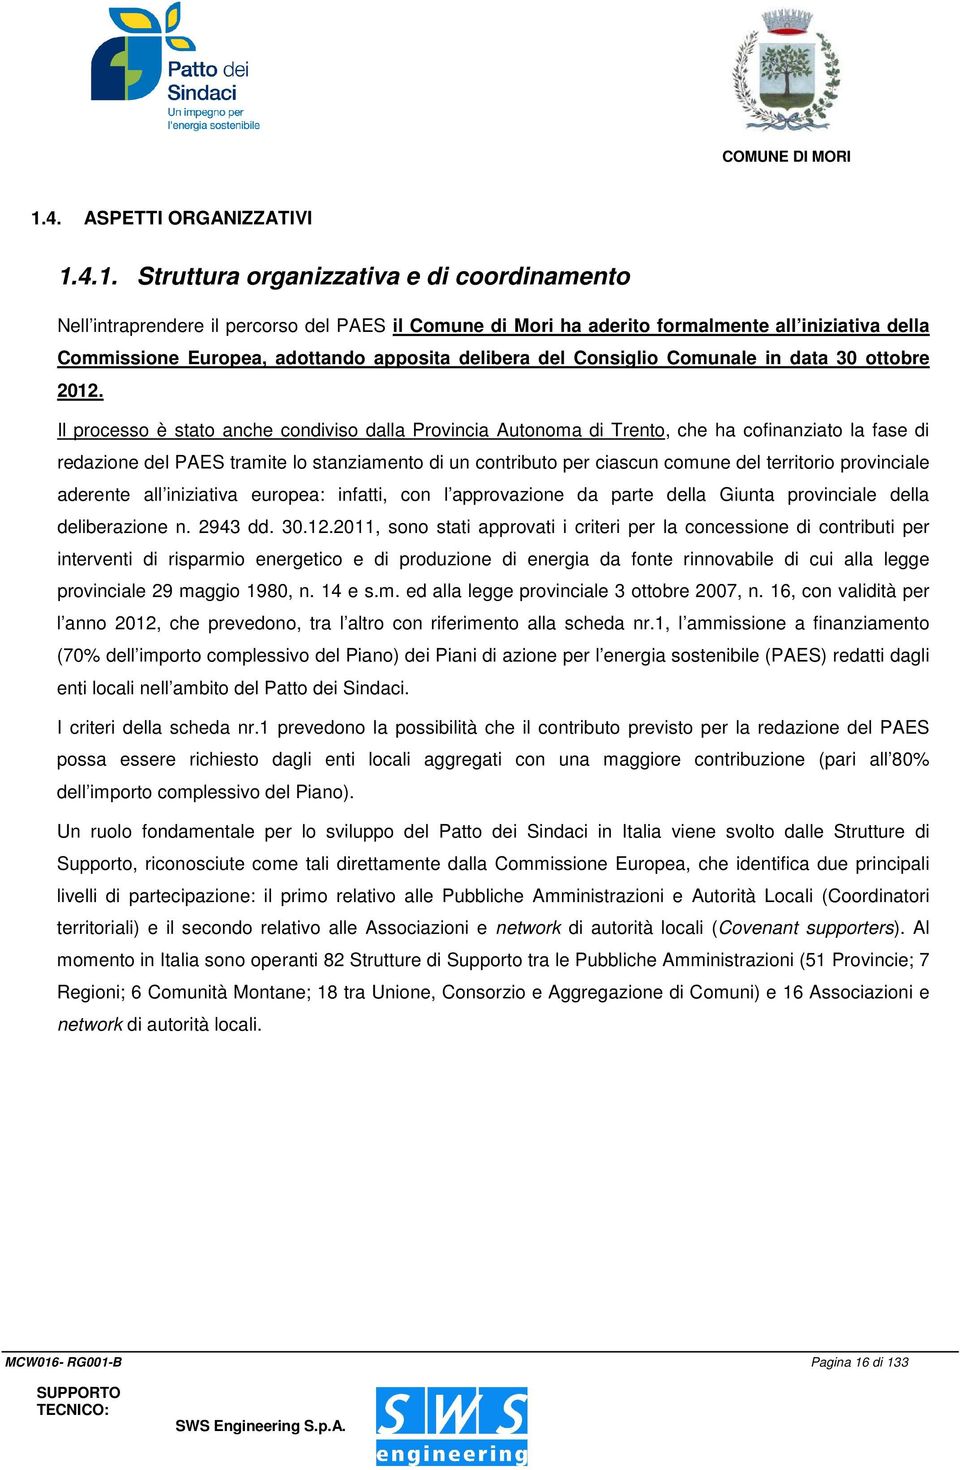 Il processo è stato anche condiviso dalla Provincia Autonoma di Trento, che ha cofinanziato la fase di redazione del PAES tramite lo stanziamento di un contributo per ciascun comune del territorio